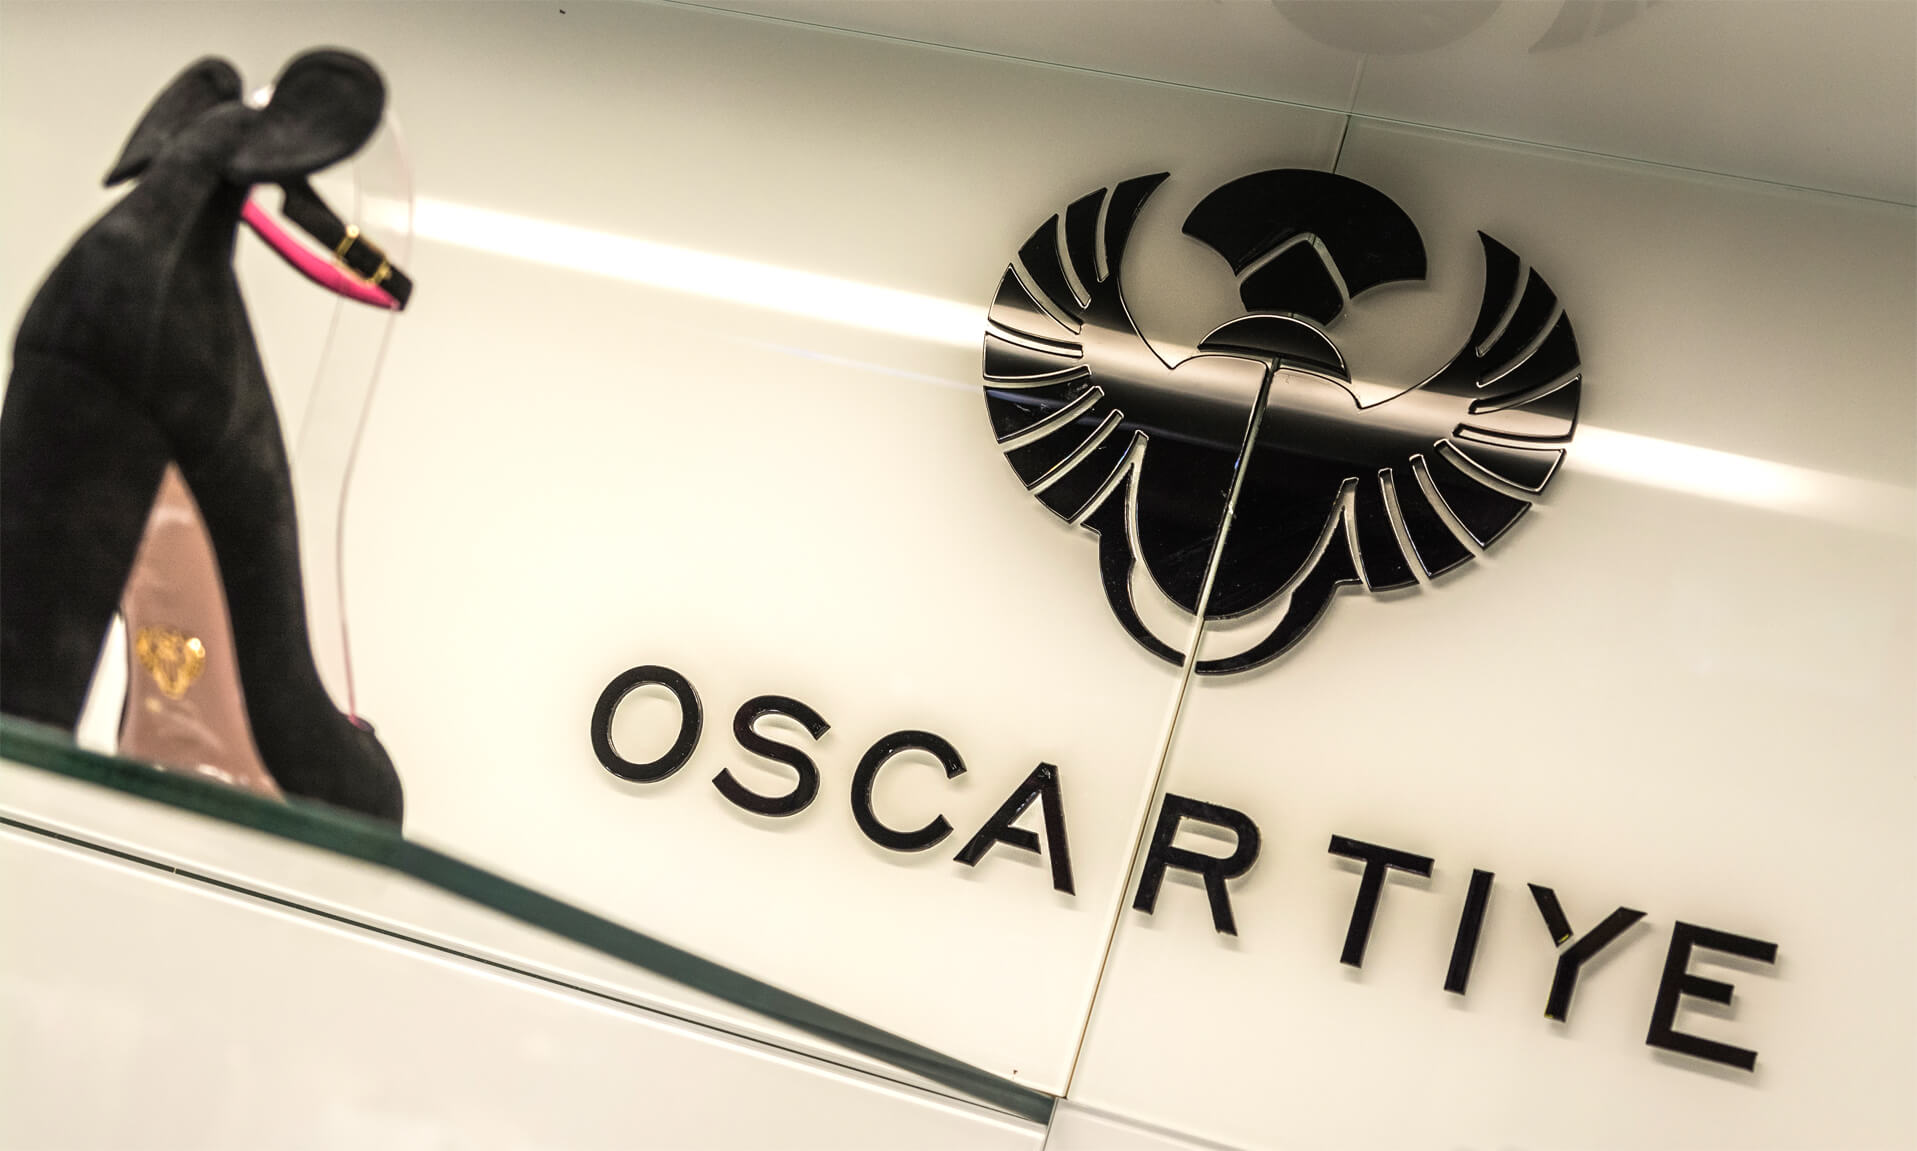 Oscartye - Oscar Tiye - logotipo y letras 3D de acrílico en color negro